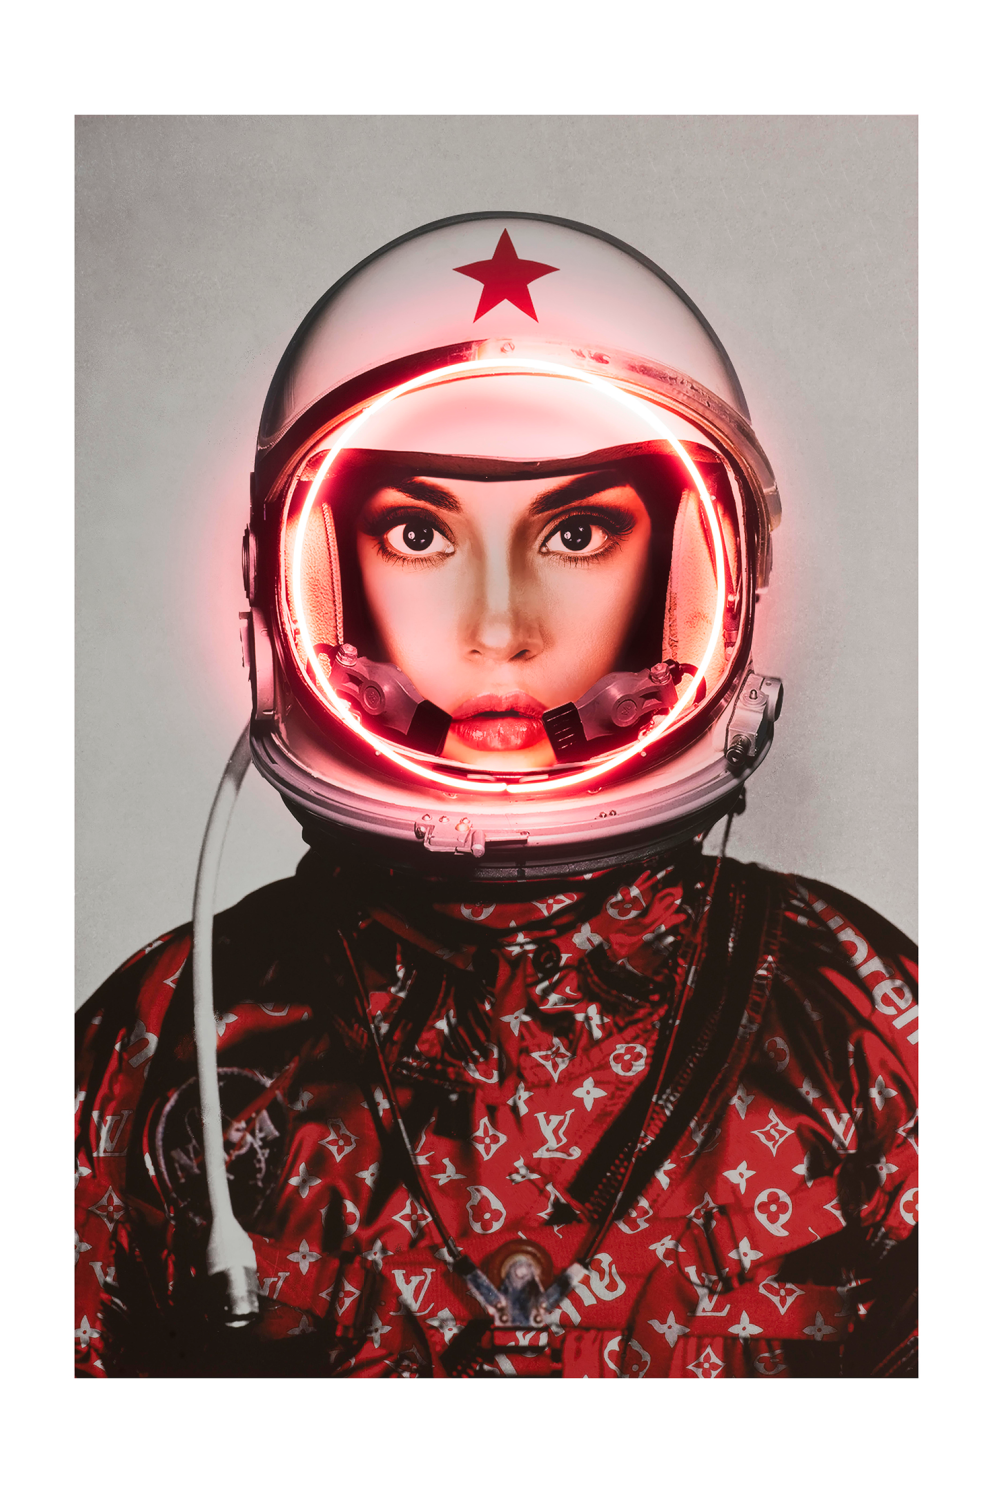 Red Louis Vuitton Neon Artwork - Andrew Martin Space Girl Logos | OROATRADE 31 x 47